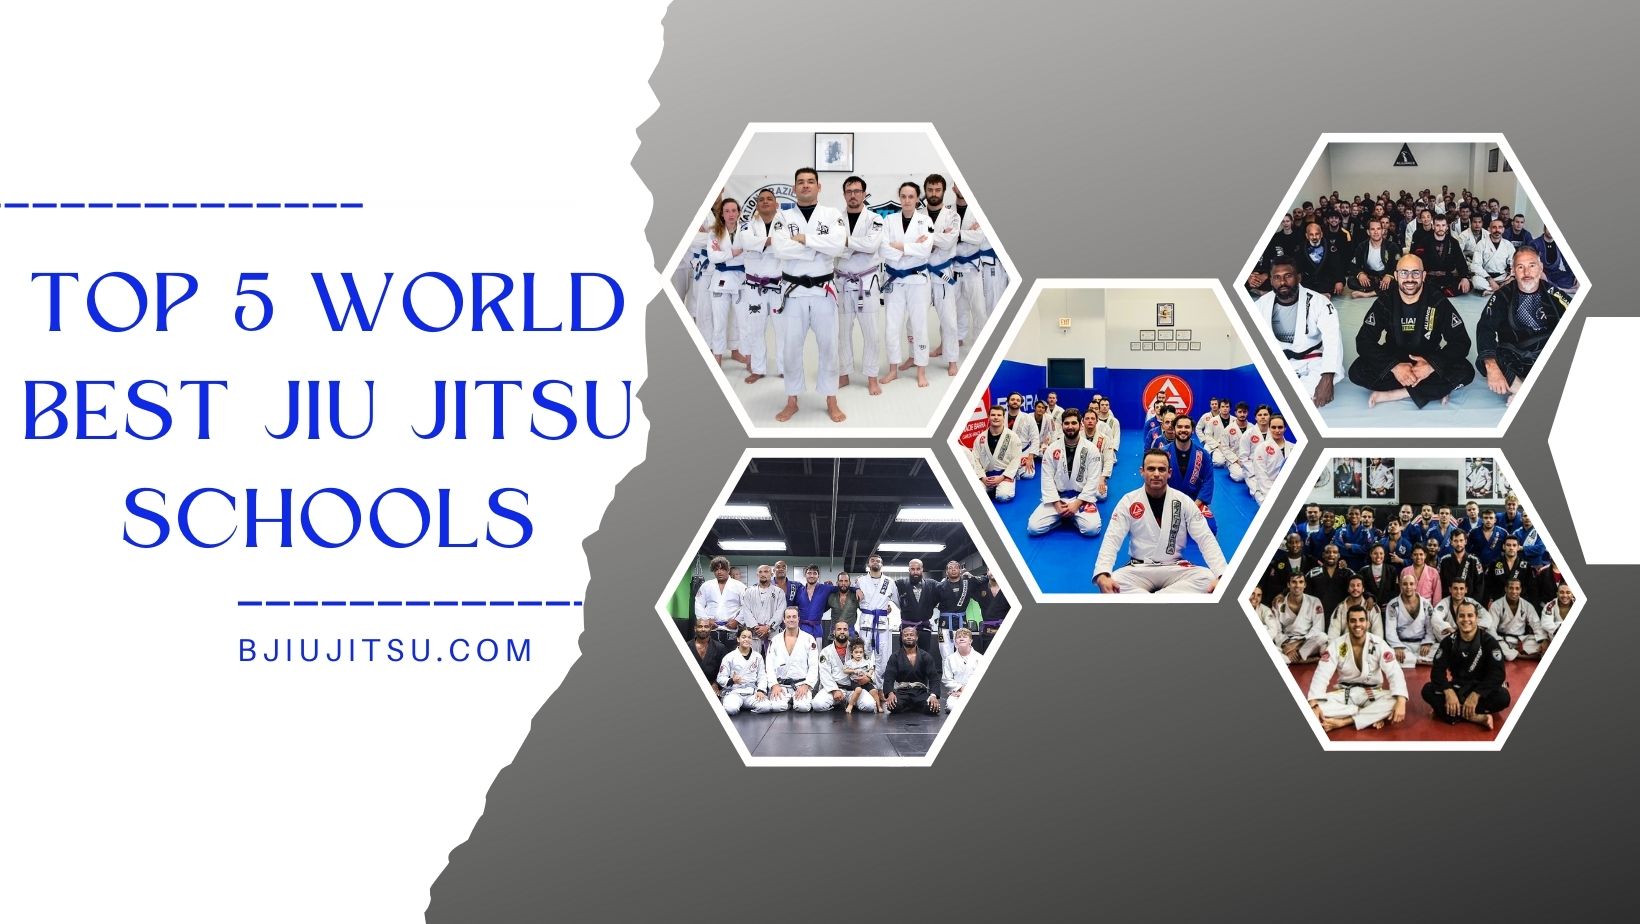 Top 5 brazilian jiu jitsu schools